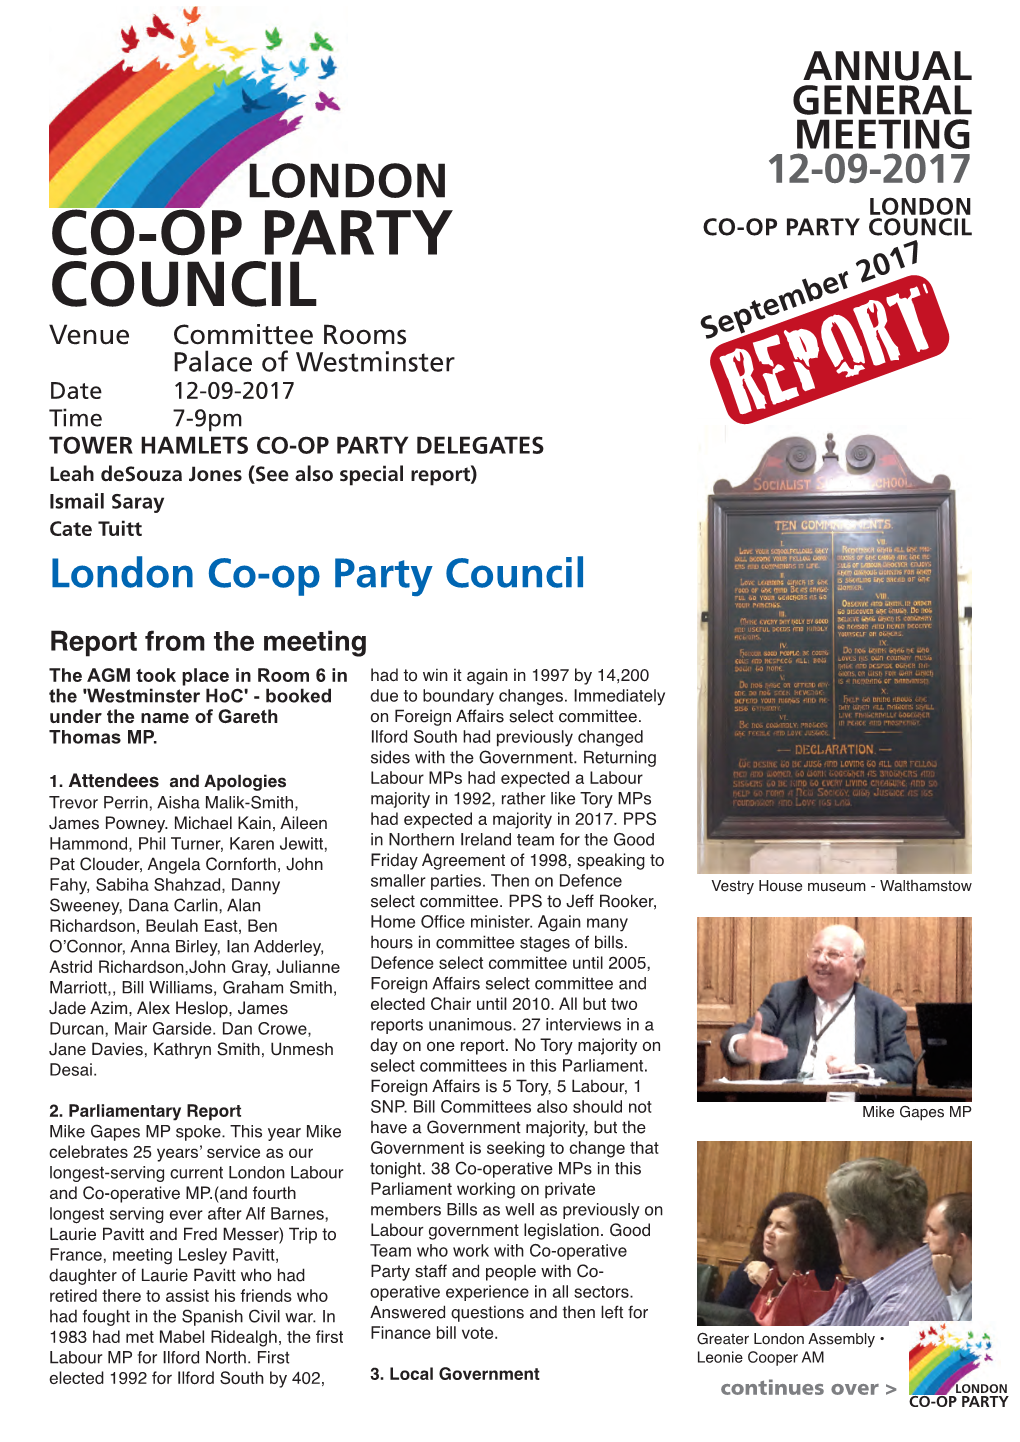 Co-Op Party London July 12-09-2017